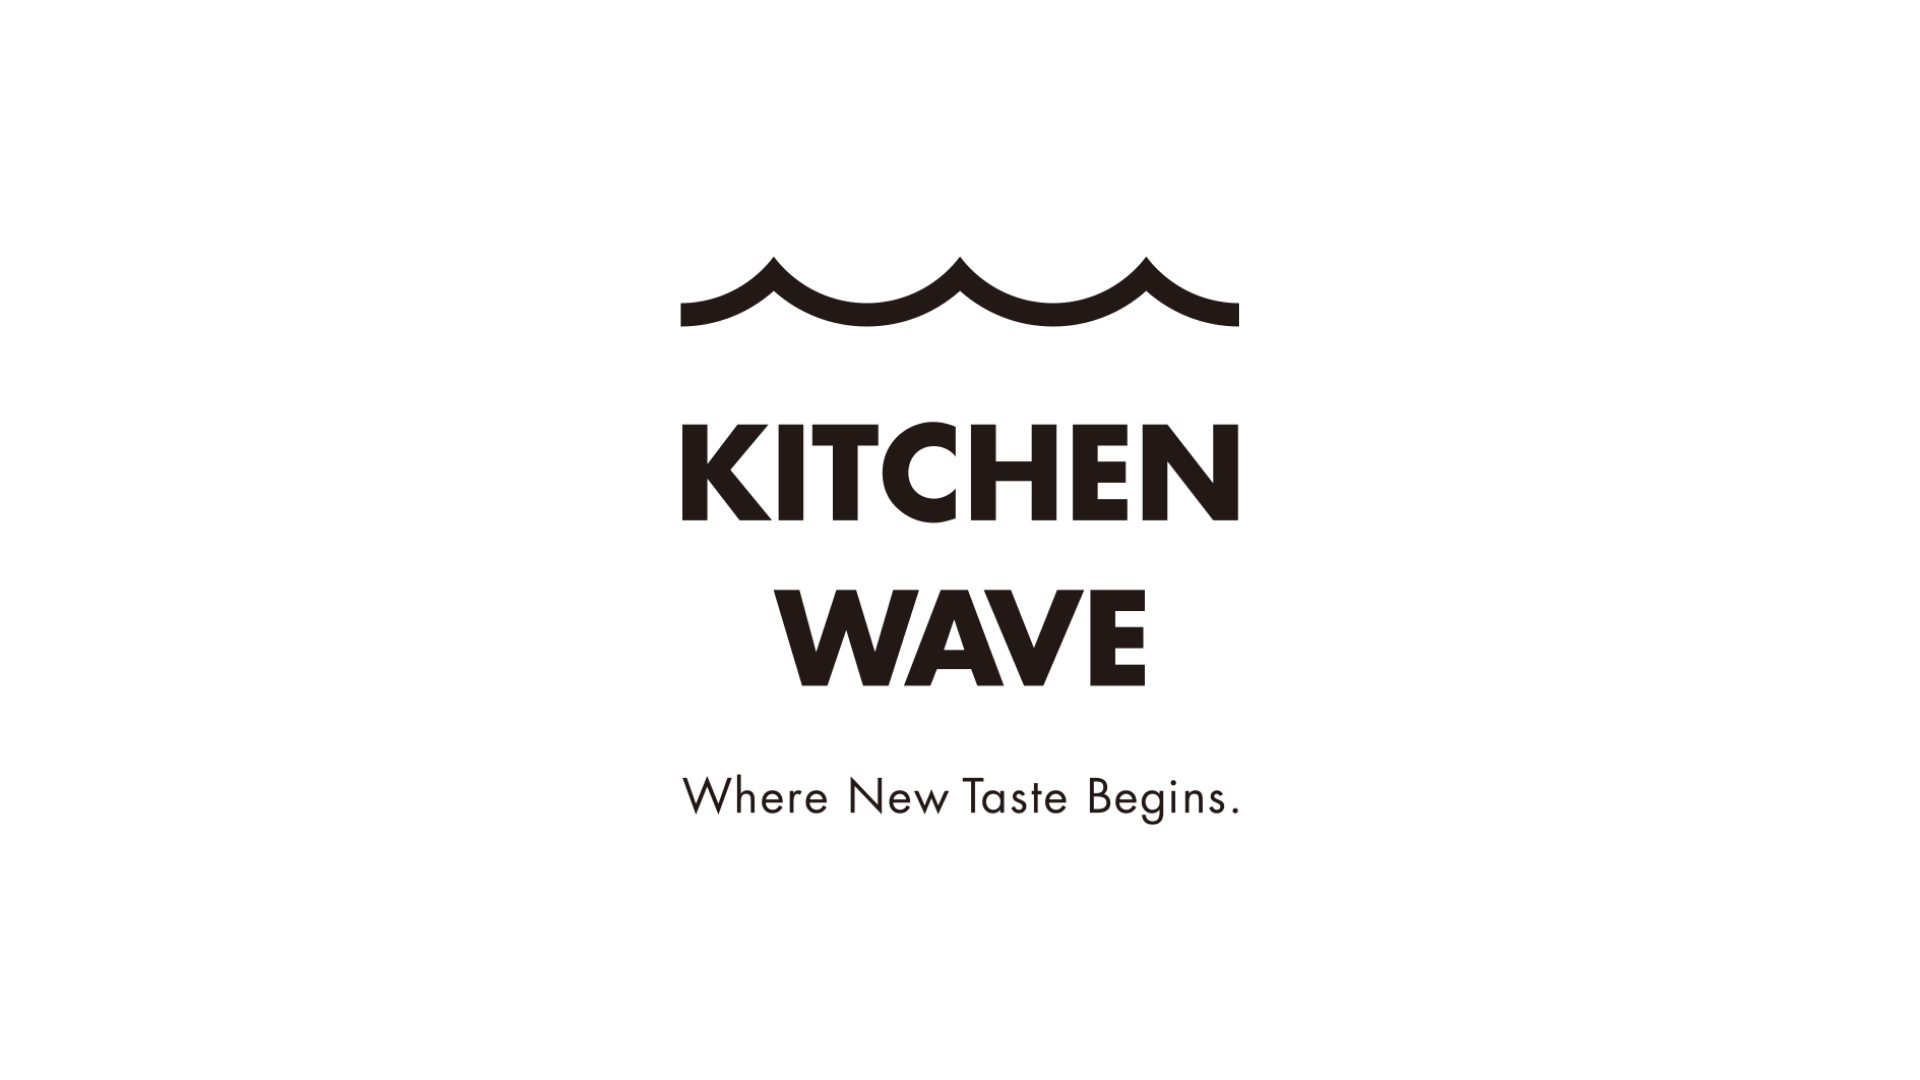 韓国最大級のクラウドキッチン企業上陸 東京 品川エリアに Kitchen Wave １号店を10月上旬オープン ガイアックスのプレスリリース